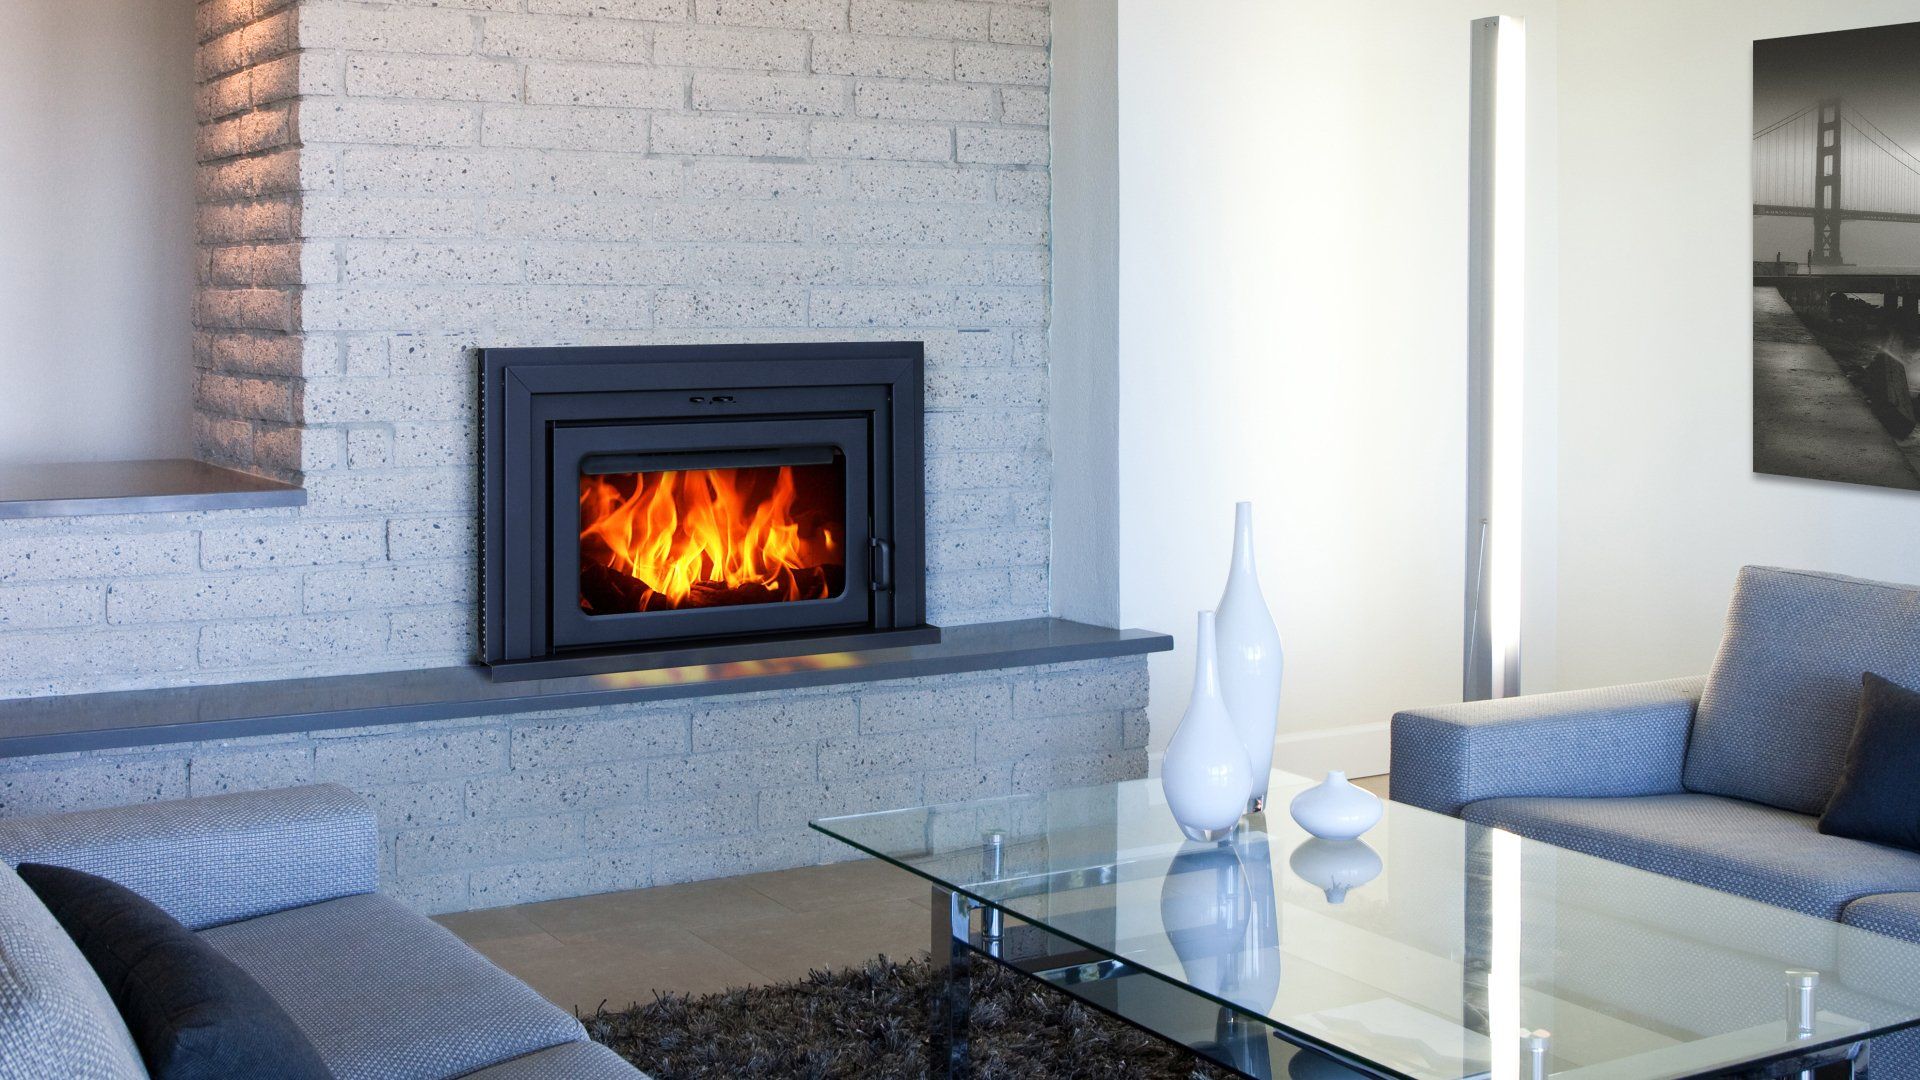 Fireplace Insert Sales & Service Olympia, Washington Northwest